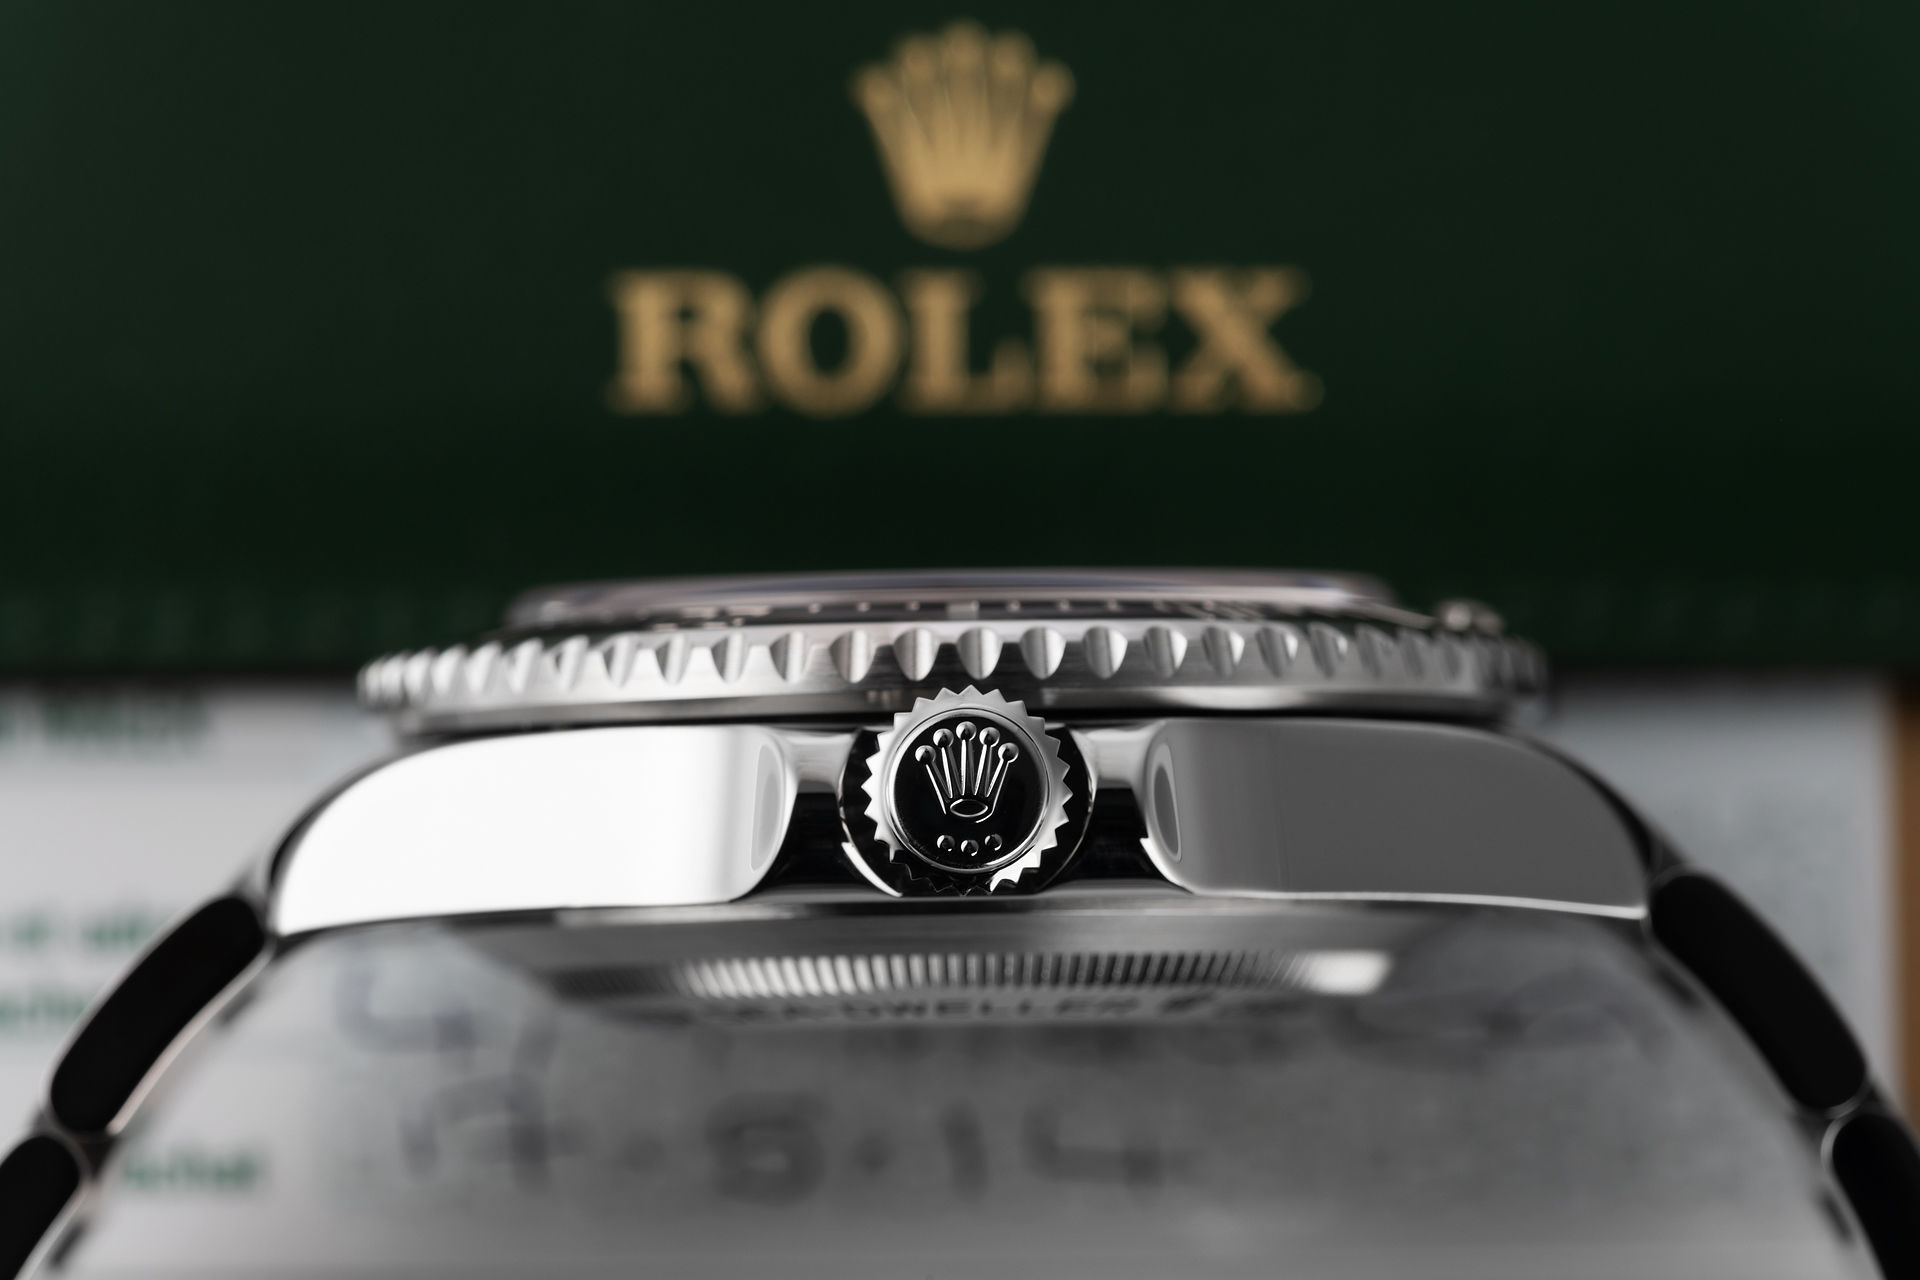 ref 116600 | '3 Year Production' Cerachrom Model | Rolex Sea-Dweller 4000